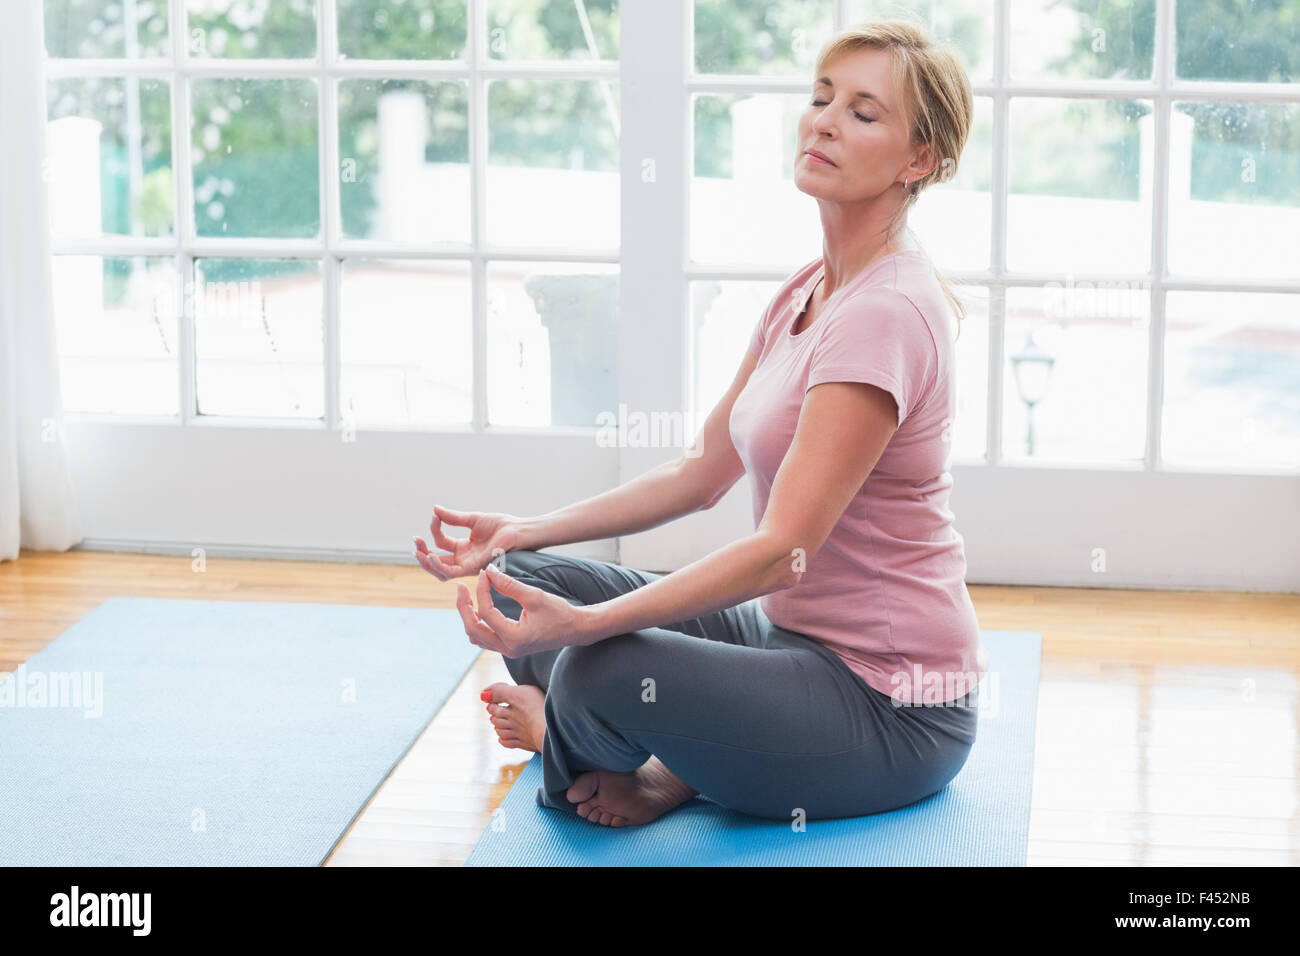 Desk Yoga for Shoulders, Back, and Neck  Healthcare Professional Edit –  deskyoga